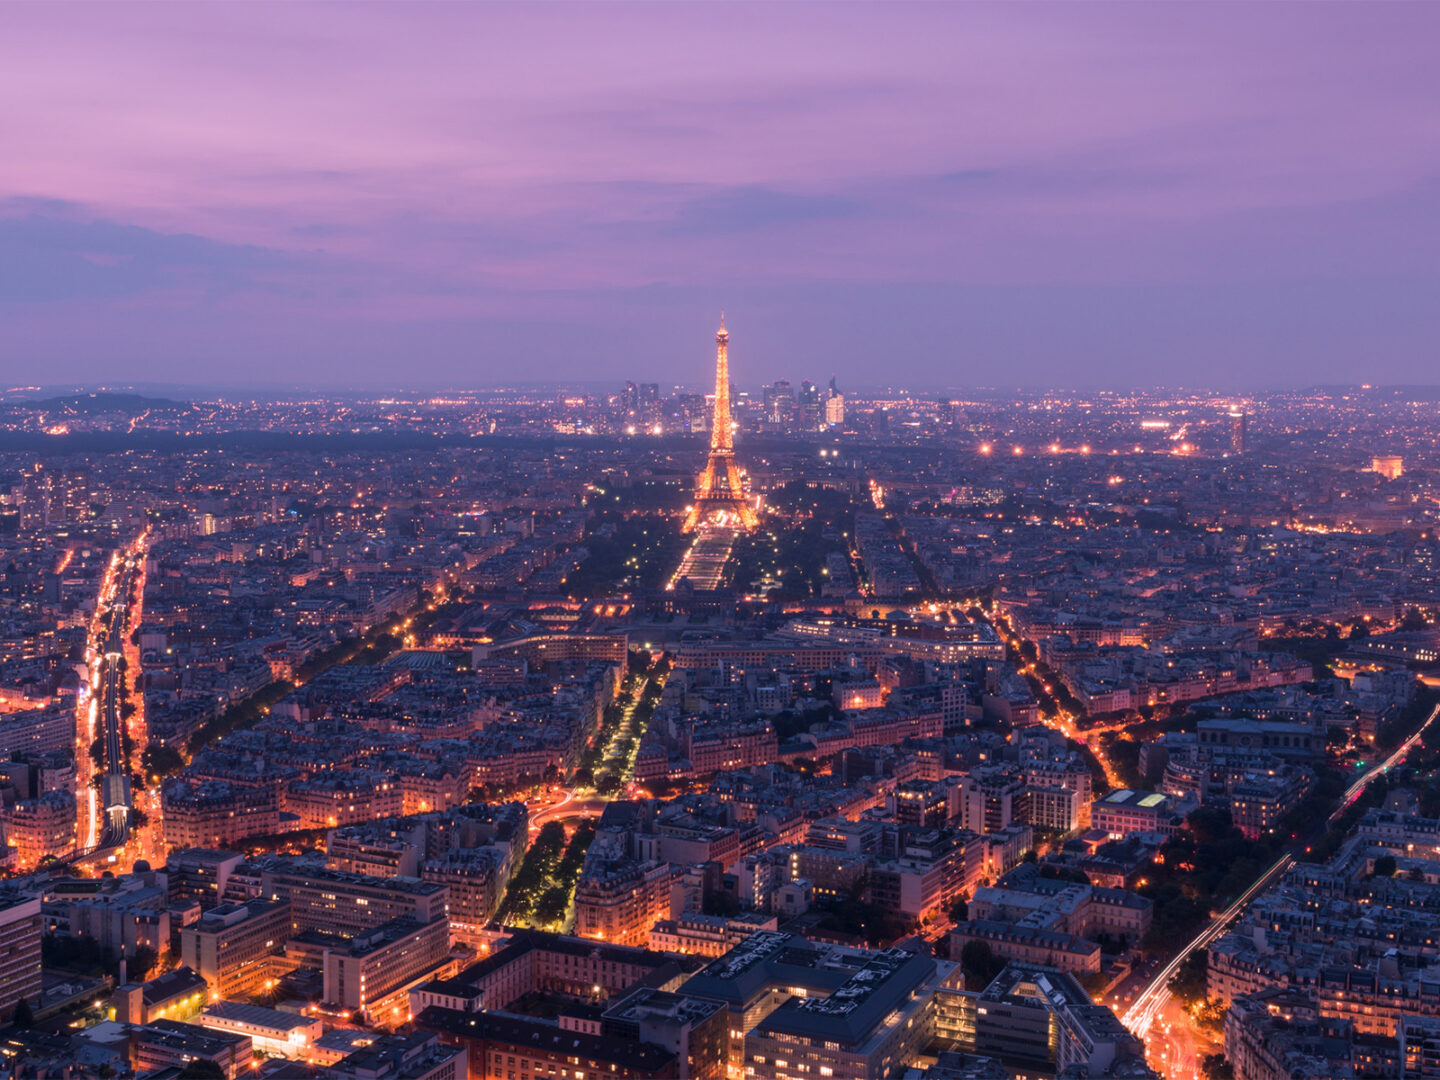 Paris bans skyscrapers (again)